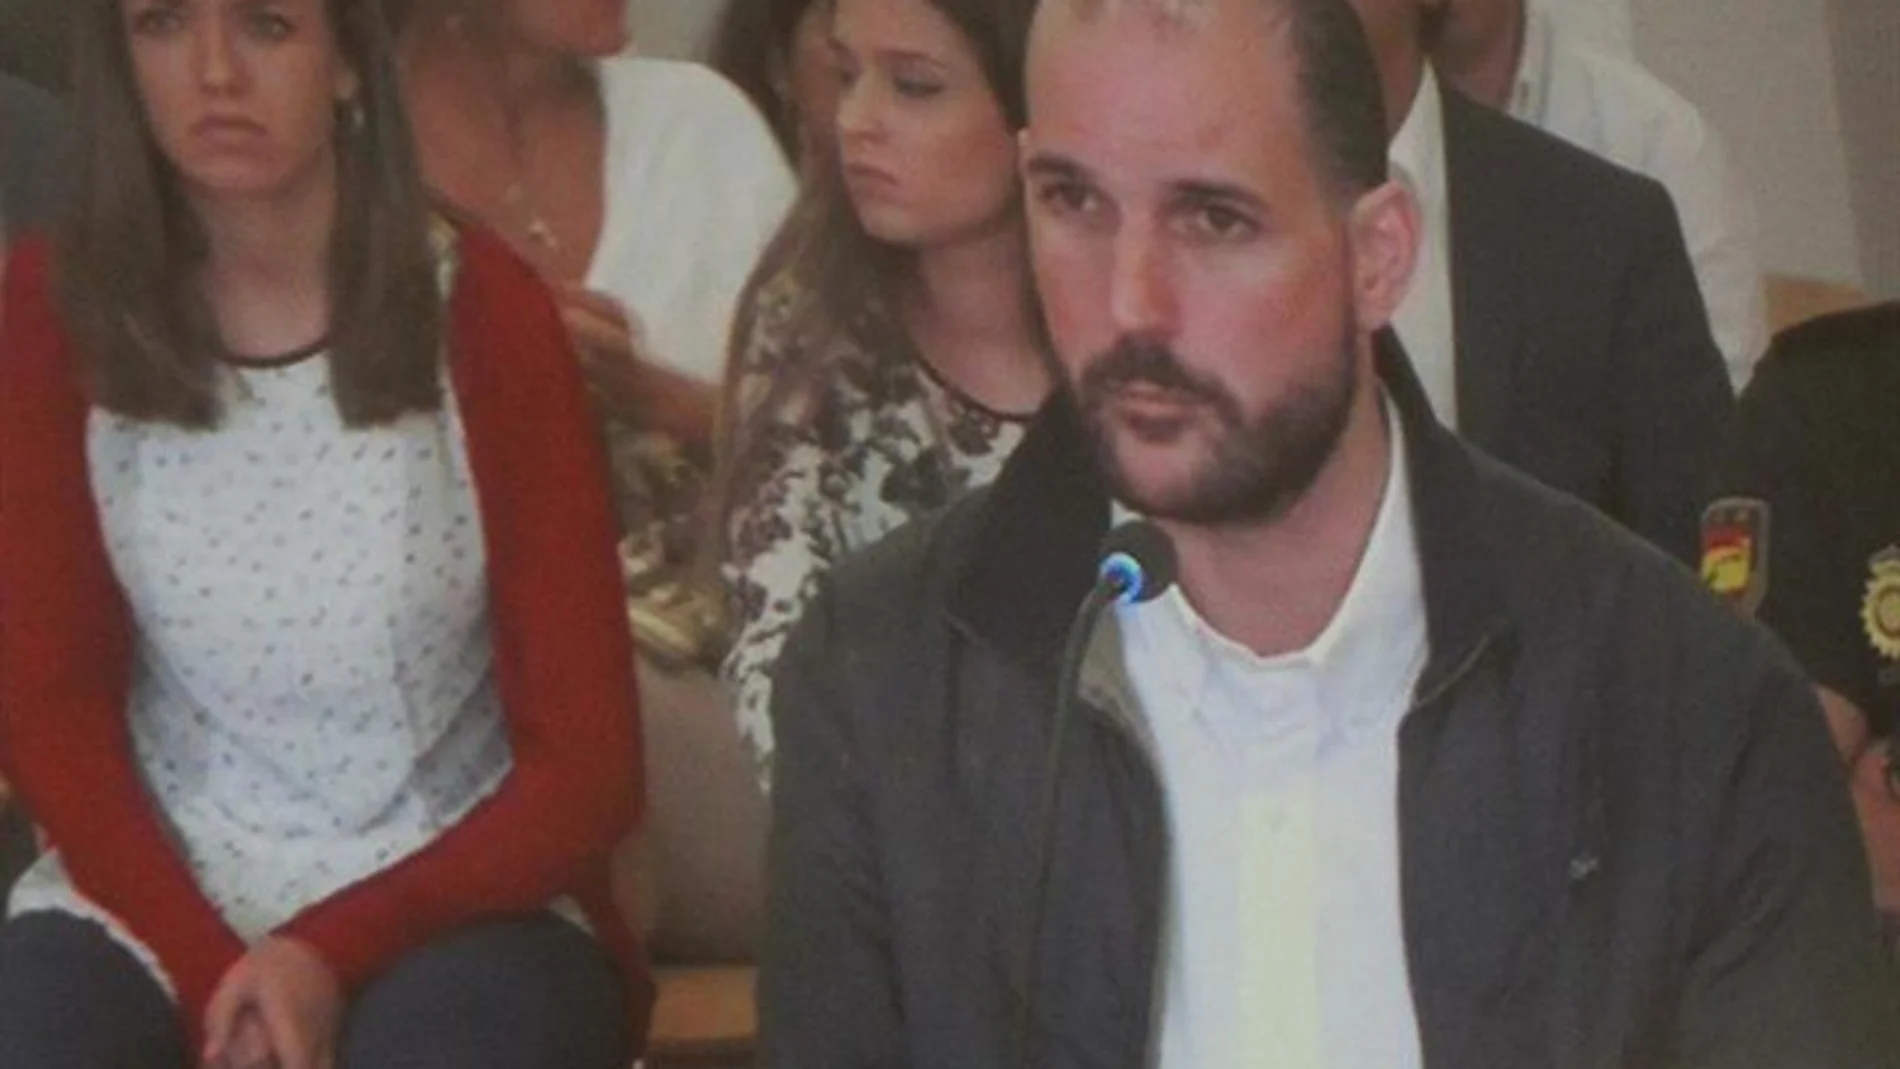 El cabecilla, Juan Cuenca, confesó ayer ante el juez que pagó a un sicario para matar a Ingrid Visser